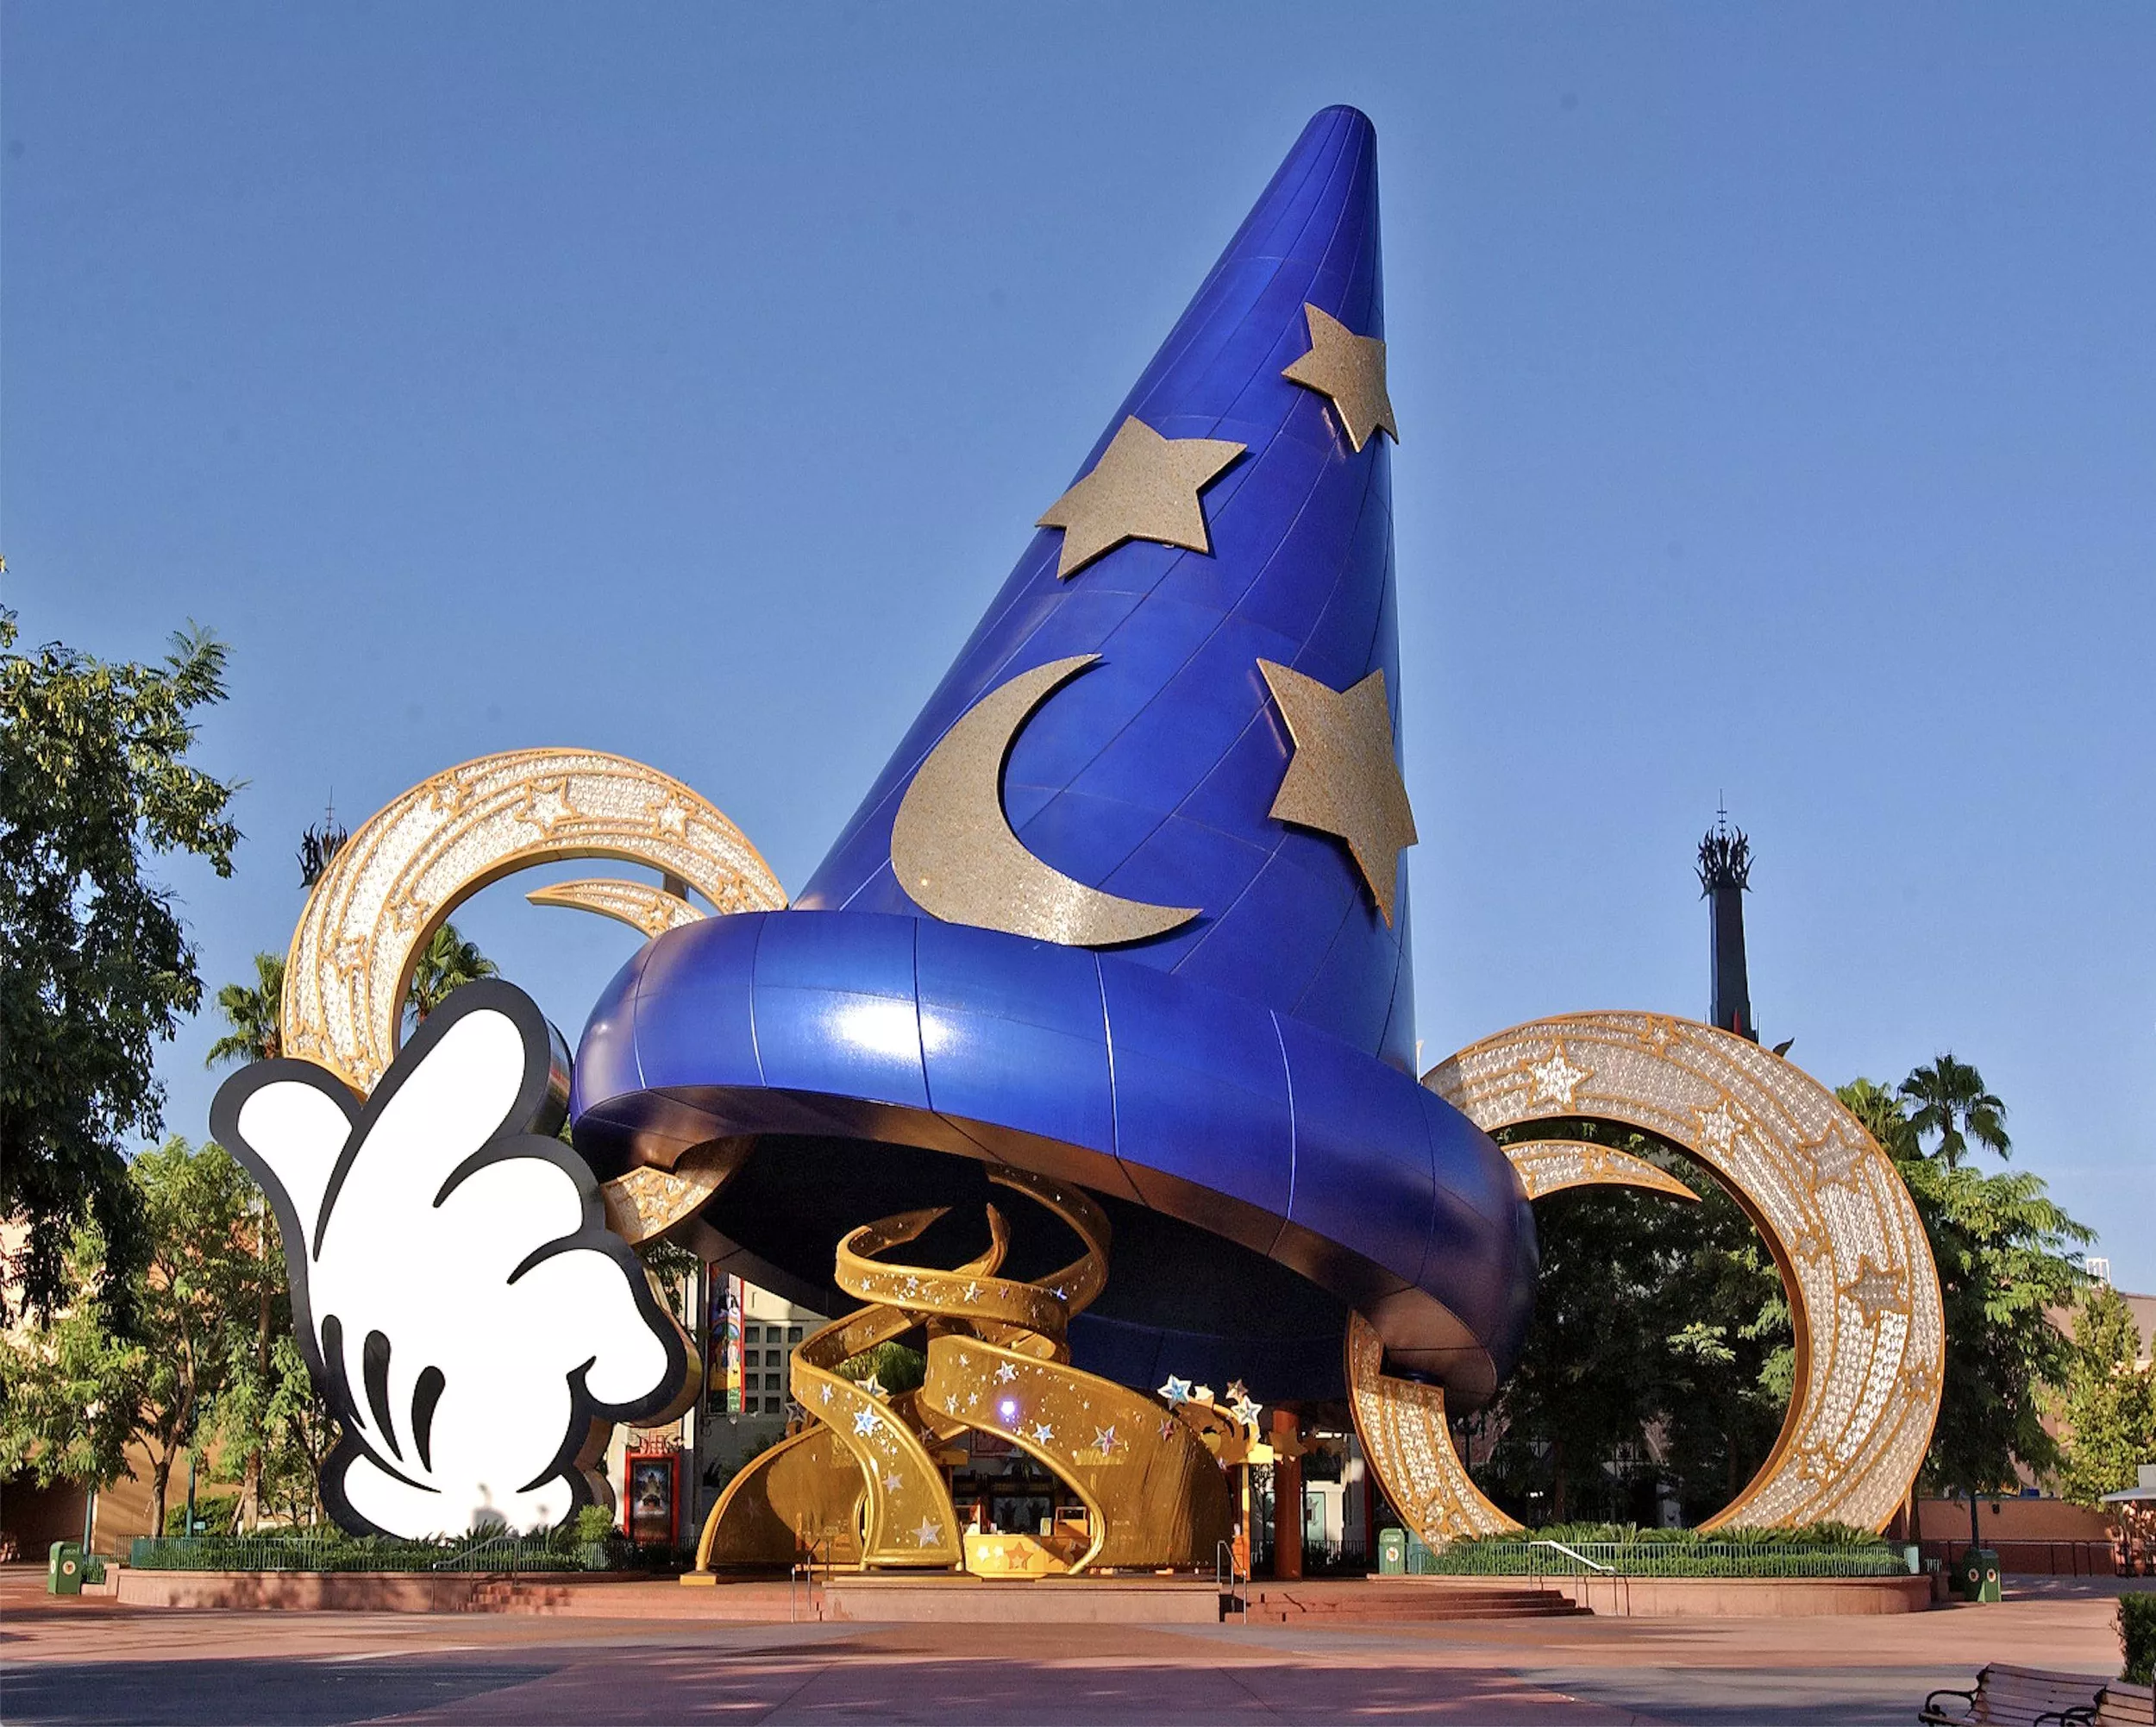 Un grand chapeau de sorcier bleu avec des motifs d’étoiles et de lune se dresse bien en évidence devant des bobines de film dorées, sous un ciel dégagé aux studios Disney MGM. Une main gantée de blanc, ressemblant à celle de Mickey Mouse